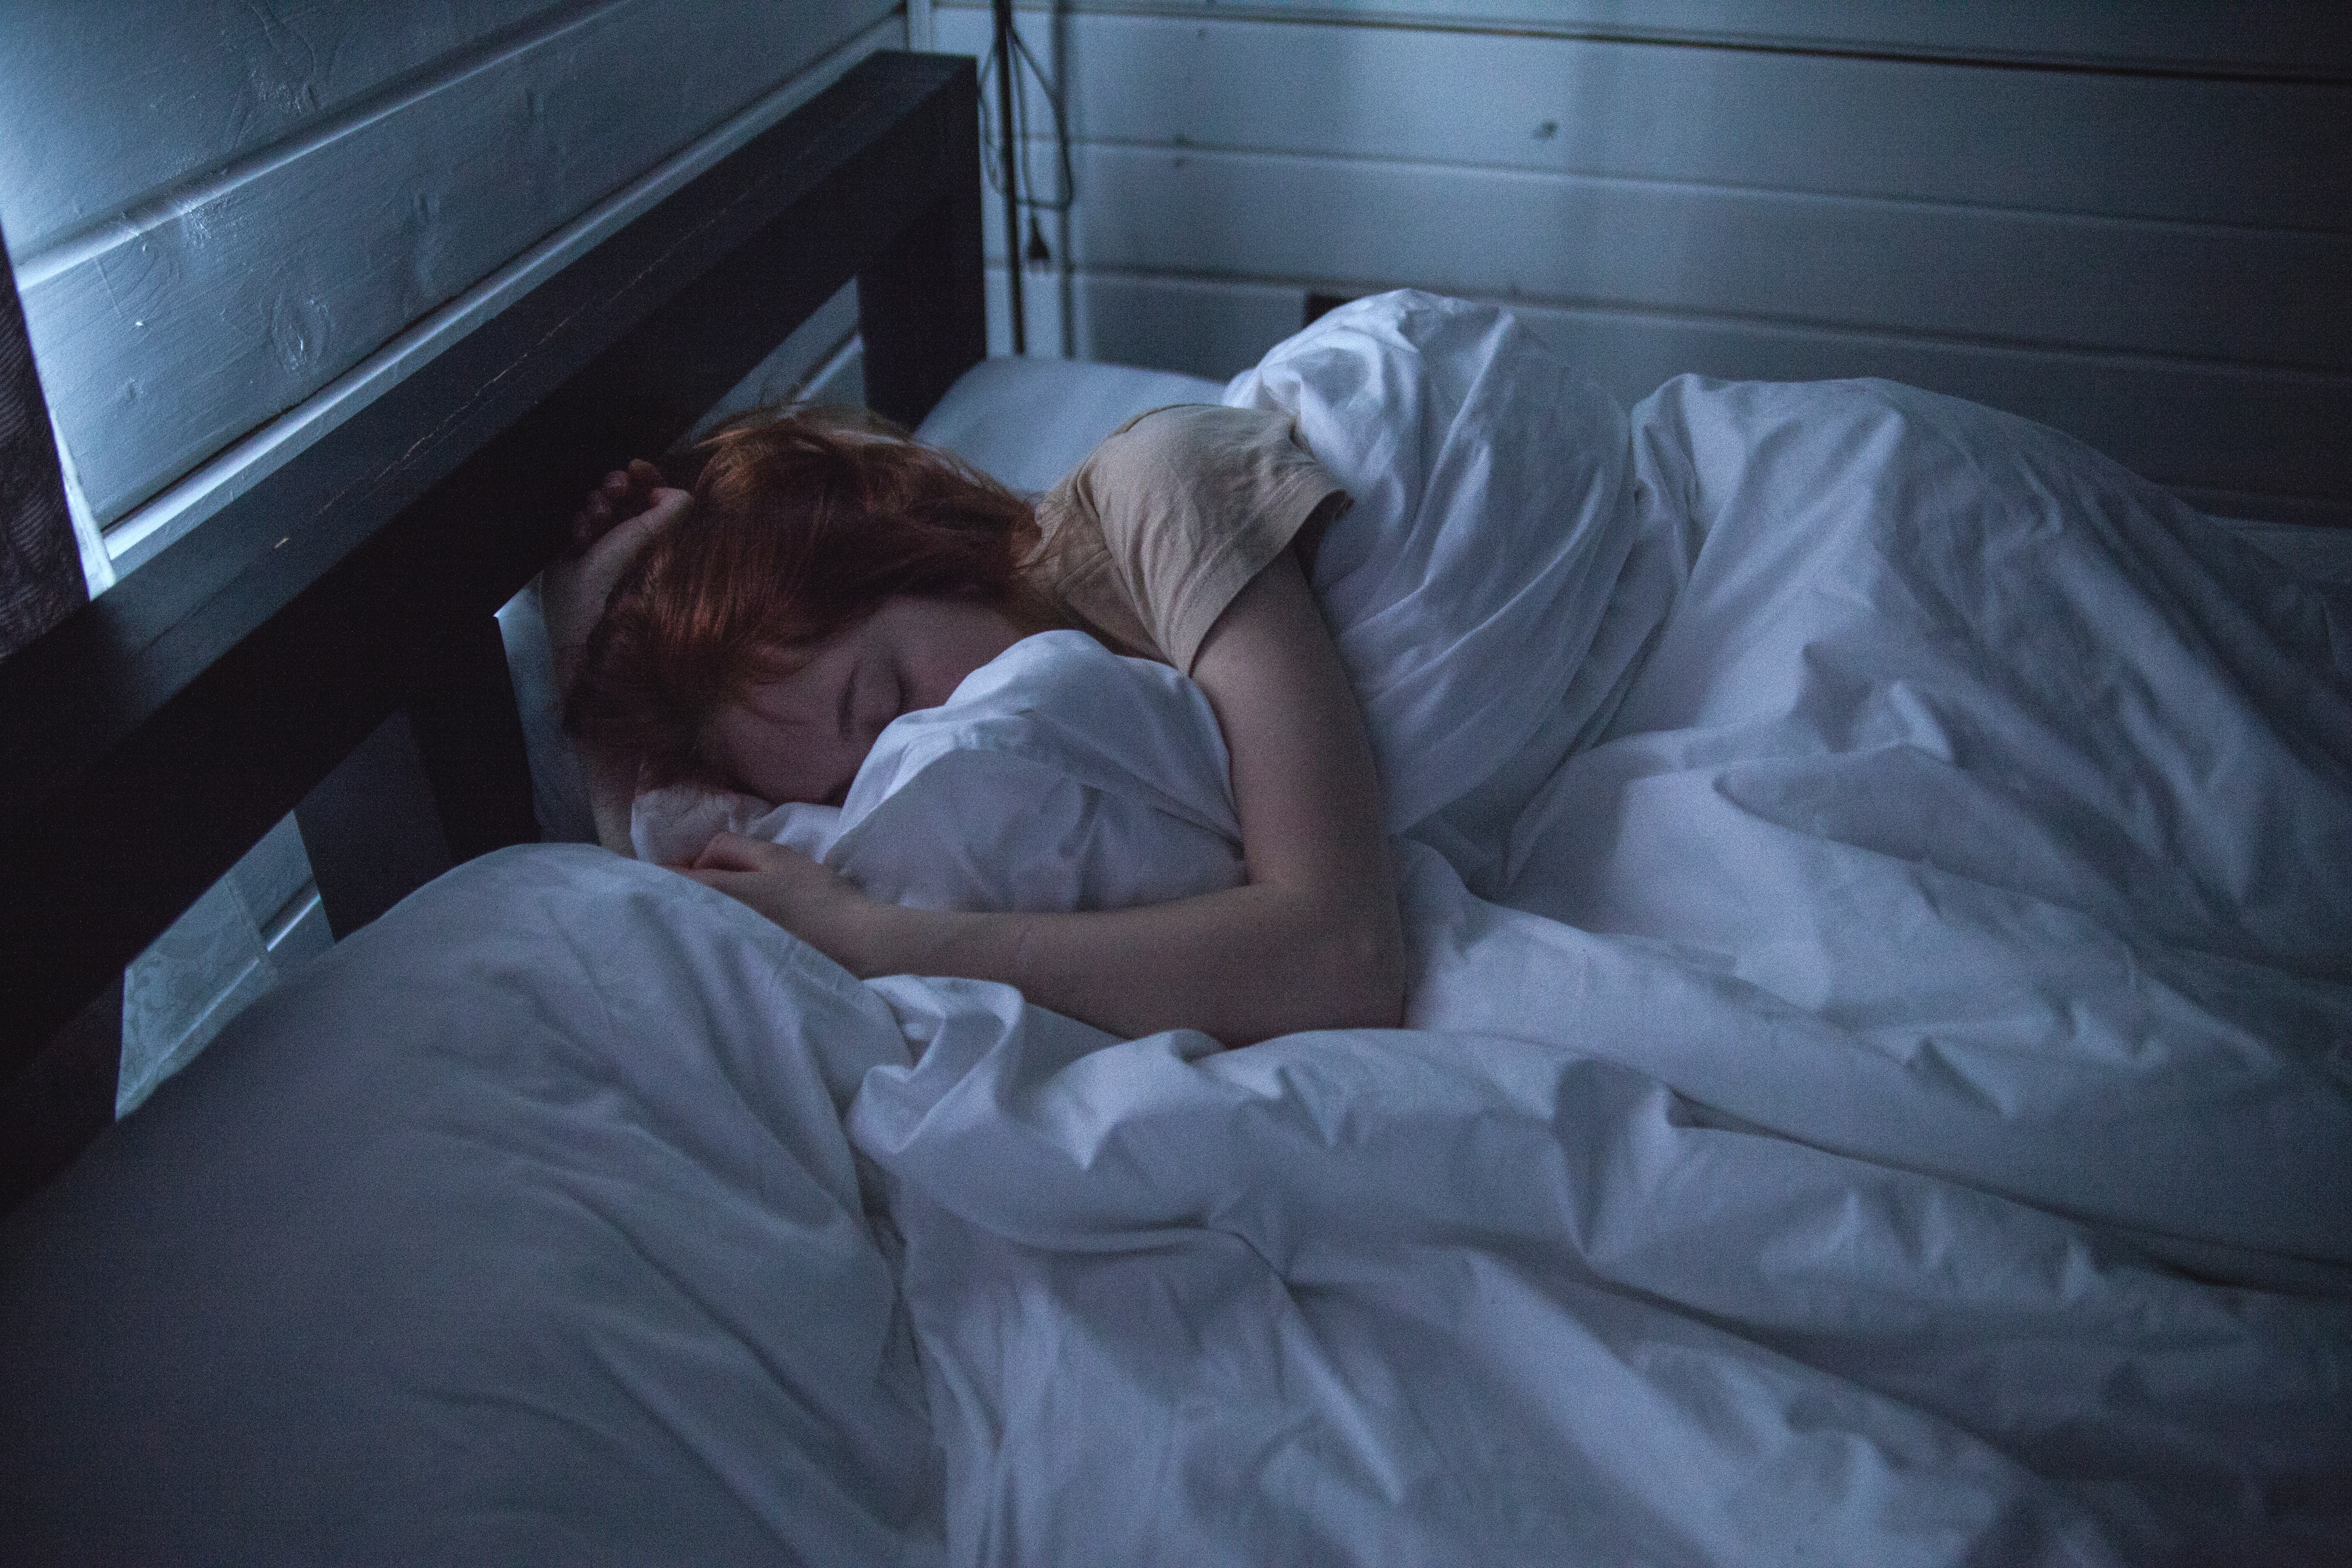 woman-asleep-on-bed-in-dark.jpg